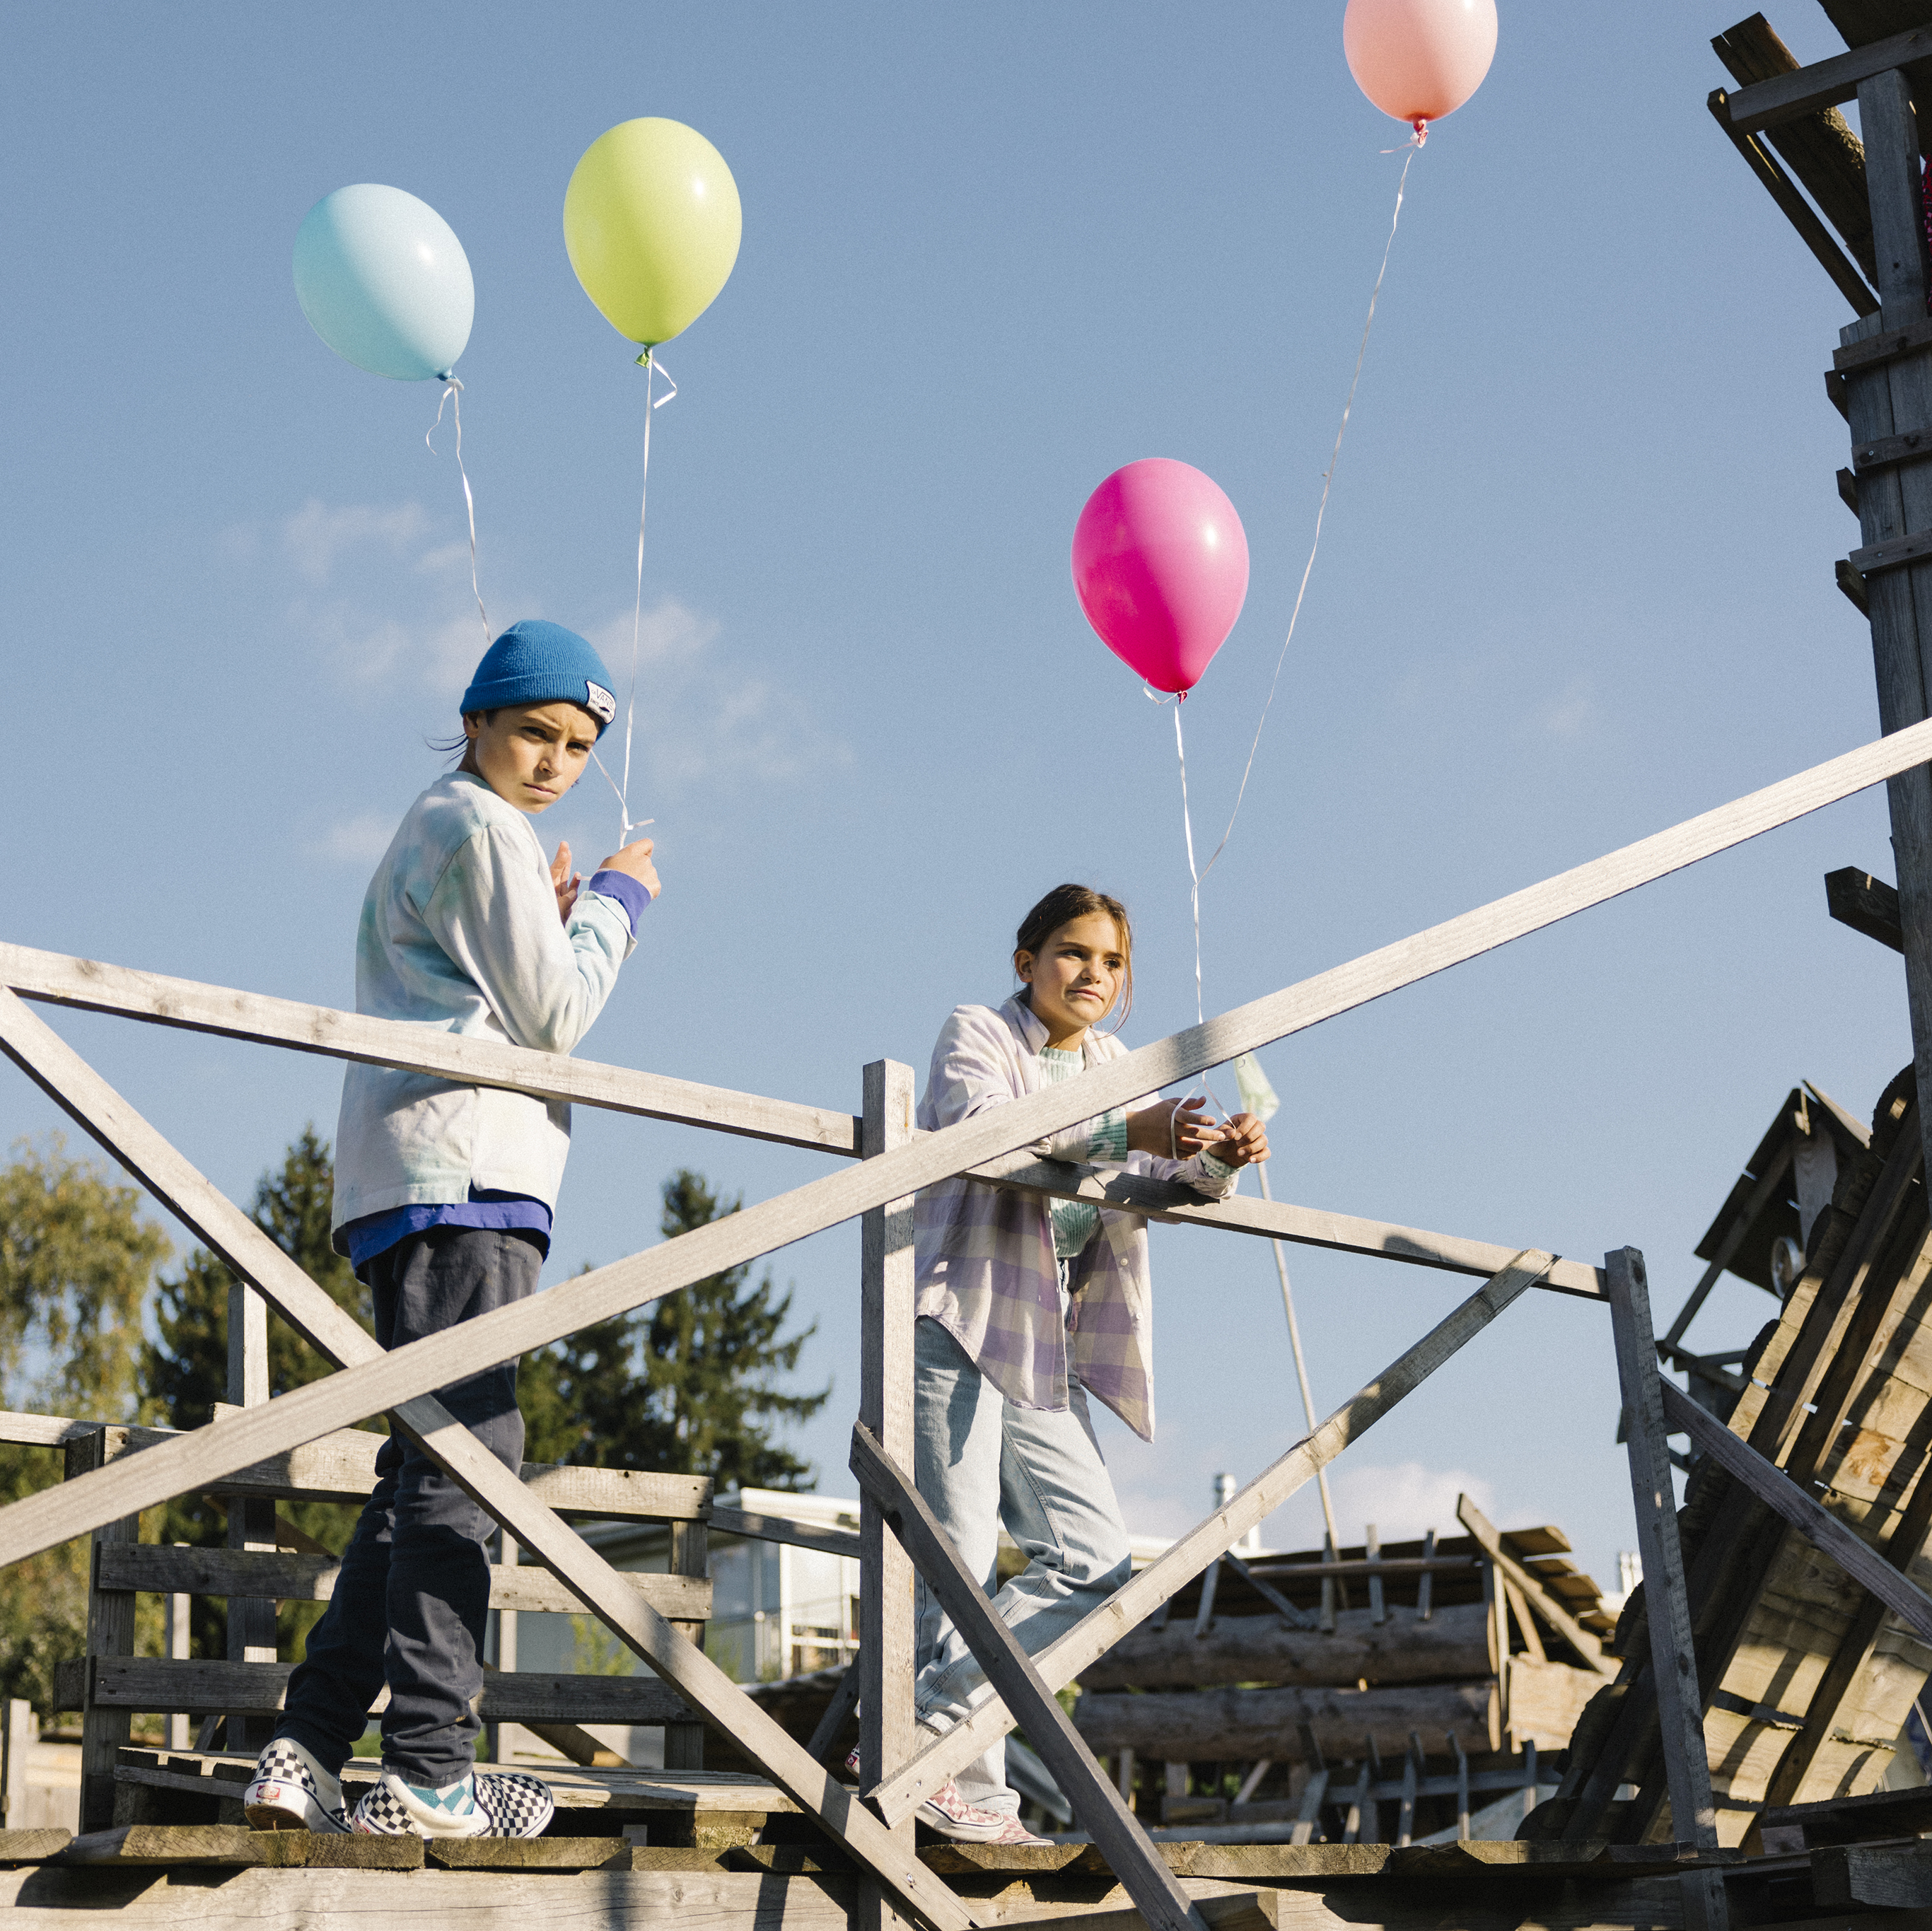 Zwei Jugendliche stehen mit konzentrierten Blicken an einem Geländer, während sie zwei Ballons pro Person in den Händen halten.